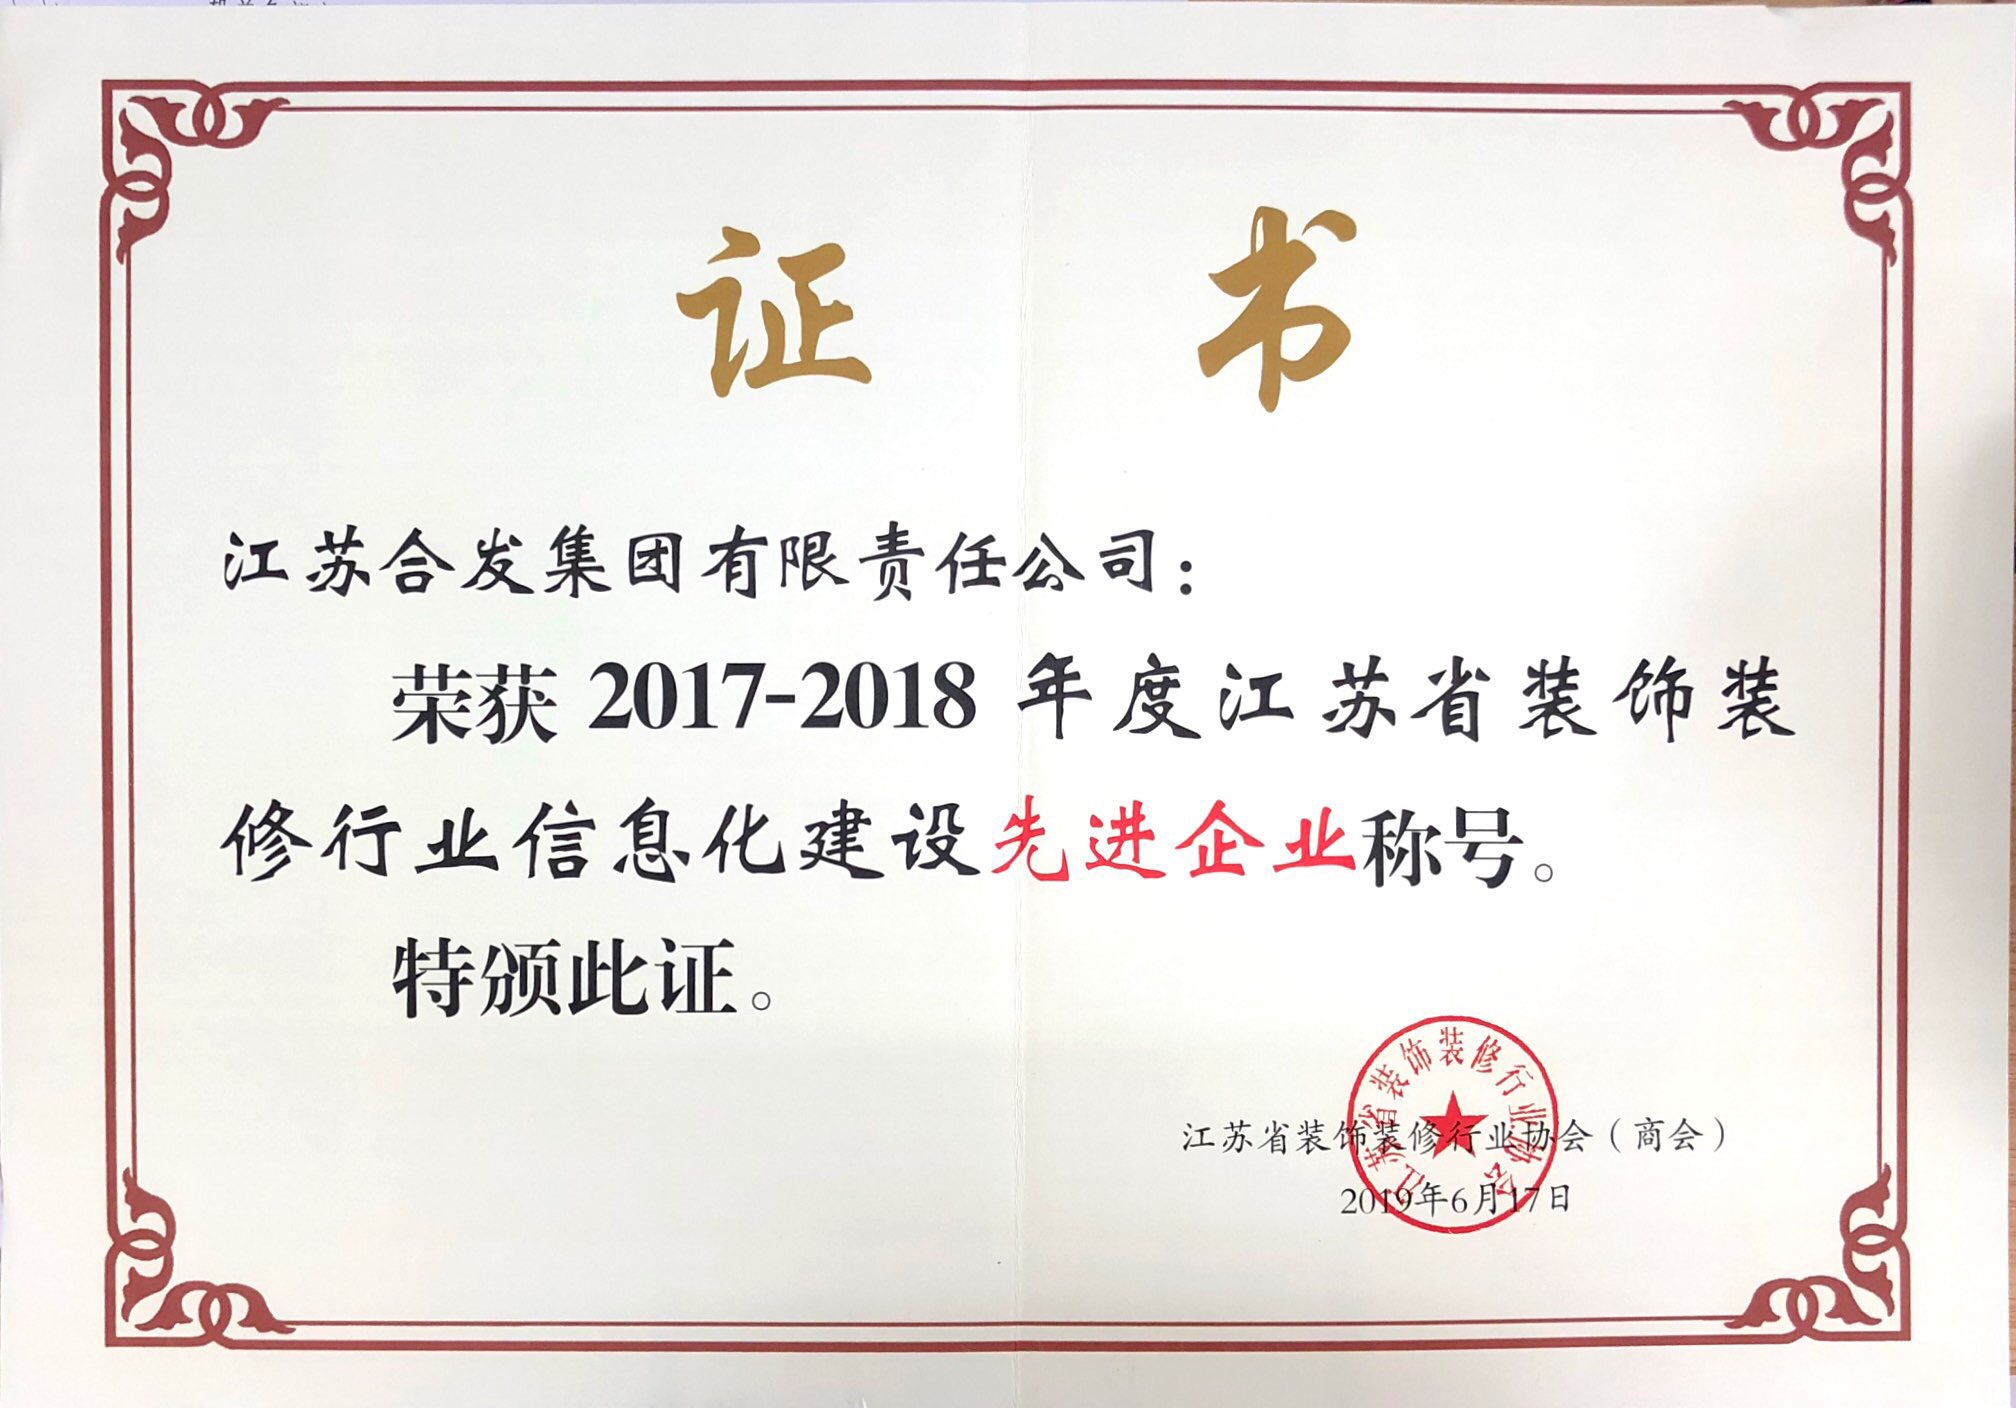 2017-2018年度江蘇省裝飾裝修行業信息化建設先進企業